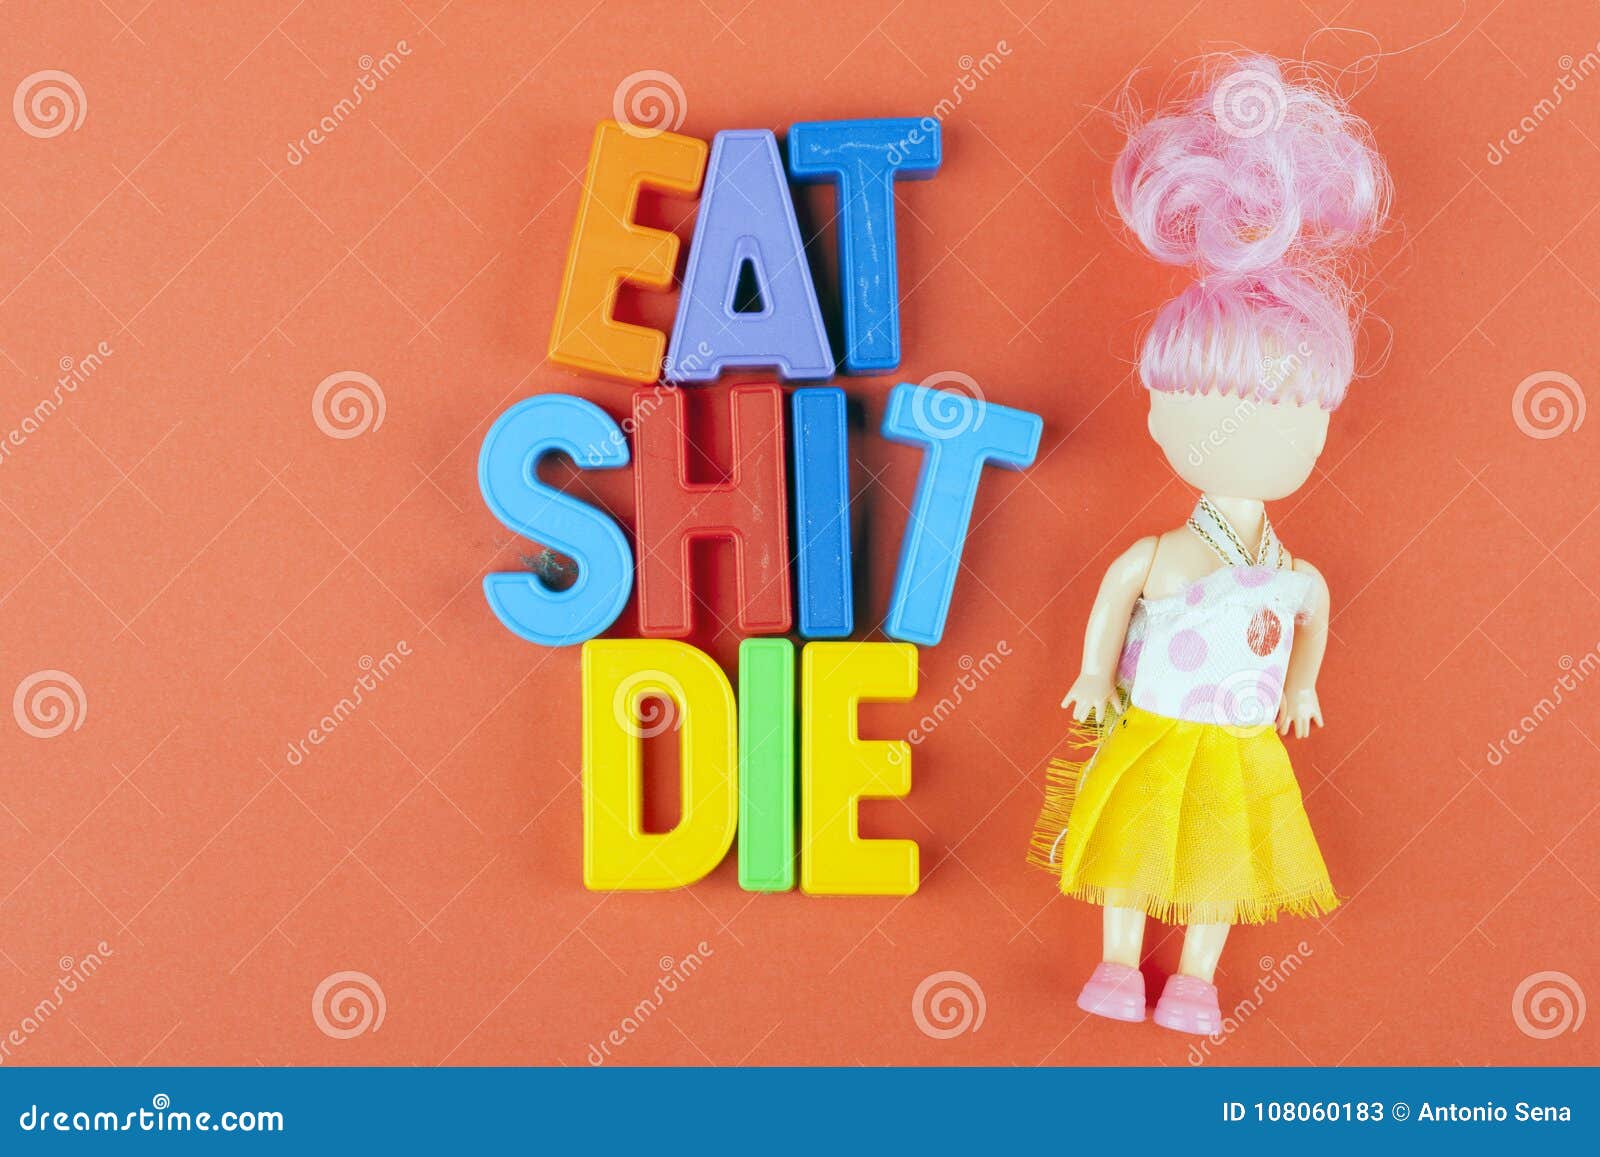 Girl eat shit